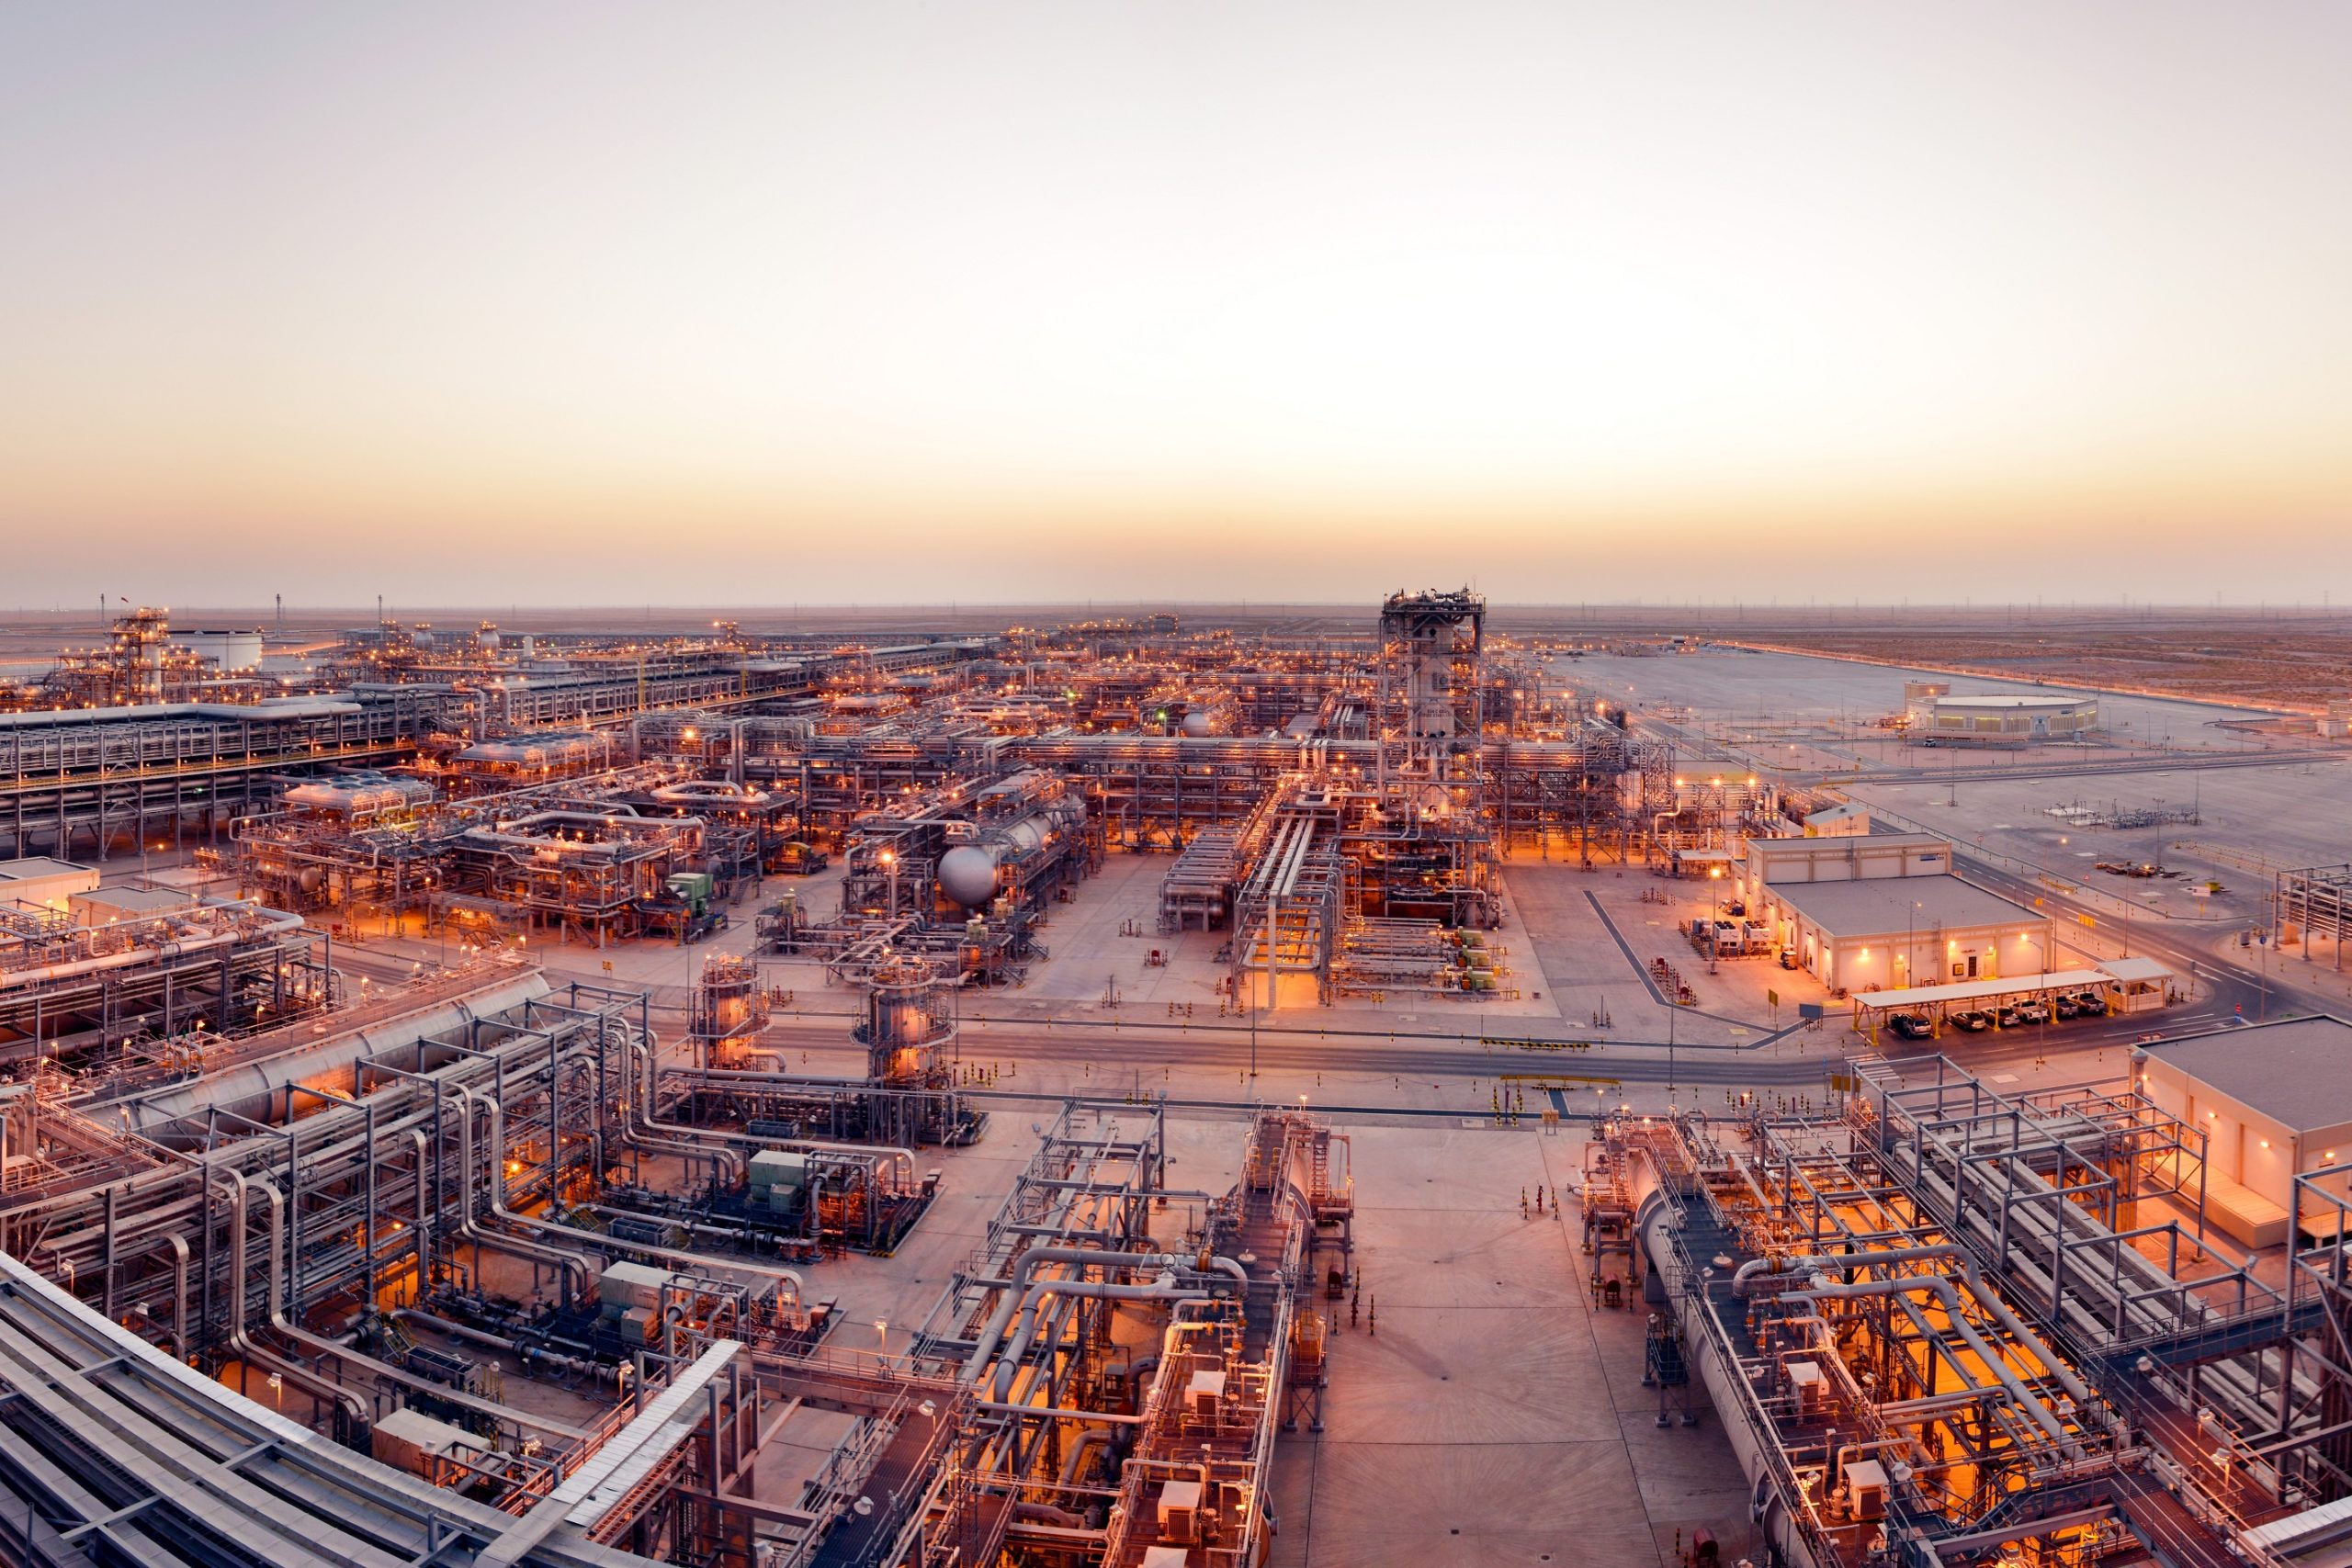 Entenda o interesse de petroleiras árabes Saudi Aramco (Arábia Saudita) e Adnoc (Emirados Árabes) na produção de lítio. Na imagem: Planta de óleo e gás Khurais, da Saudi Aramco (Foto: Divulgação Saudi Aramco)